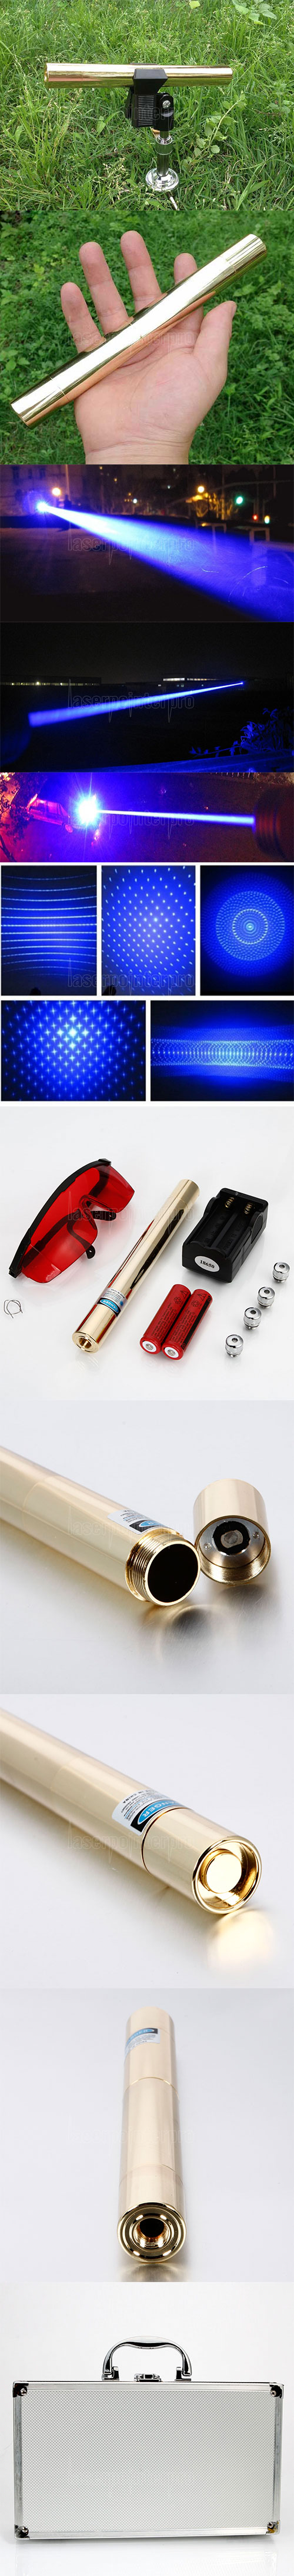 30000mW 450nm 5 en 1 Blue Superhigh Power Laser Pointer Pen Kit Golden